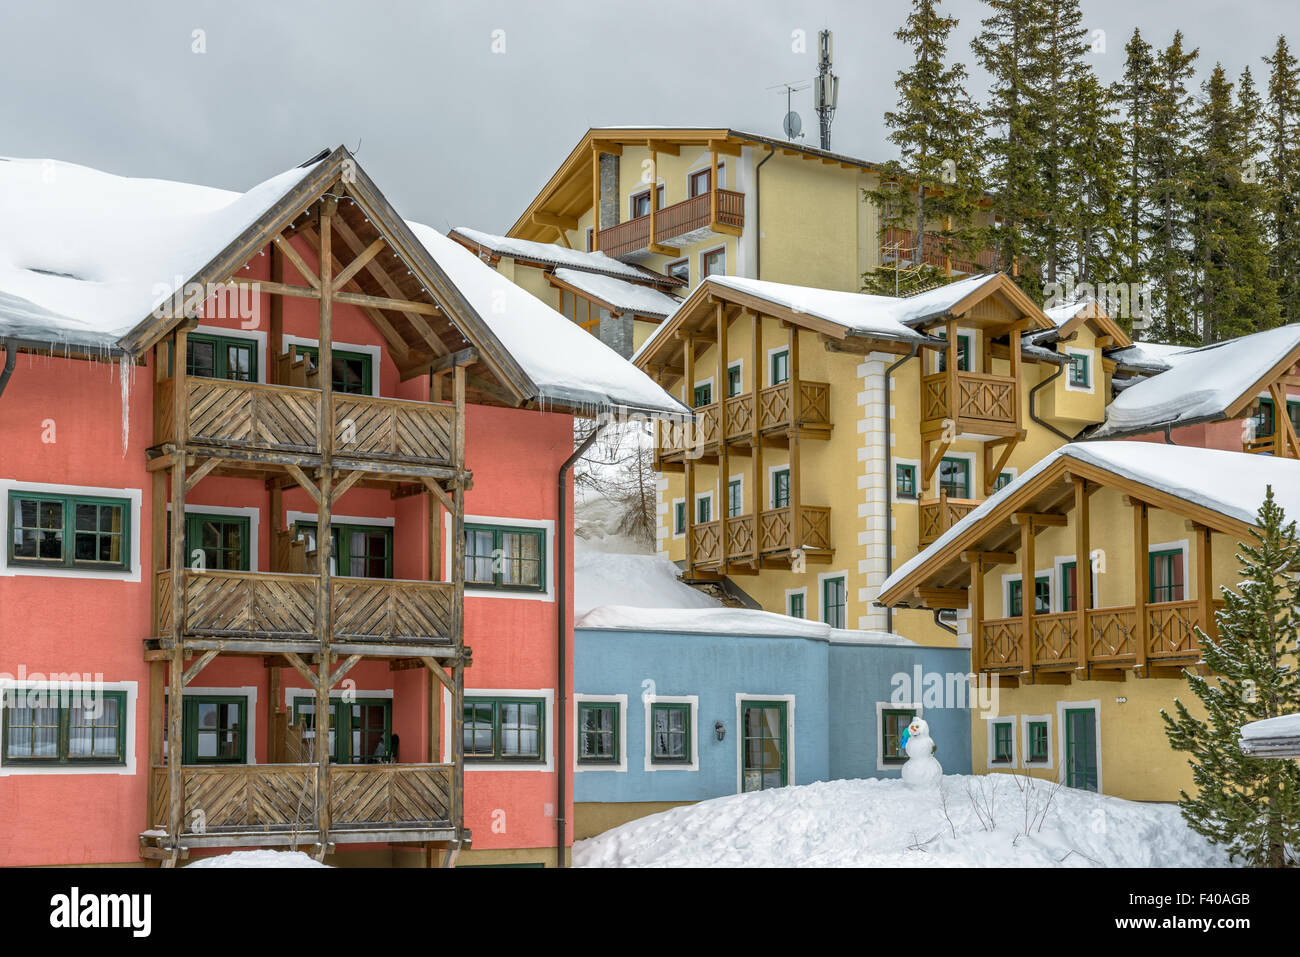 Hotel on ski resort in austrian Alps Stock Photo